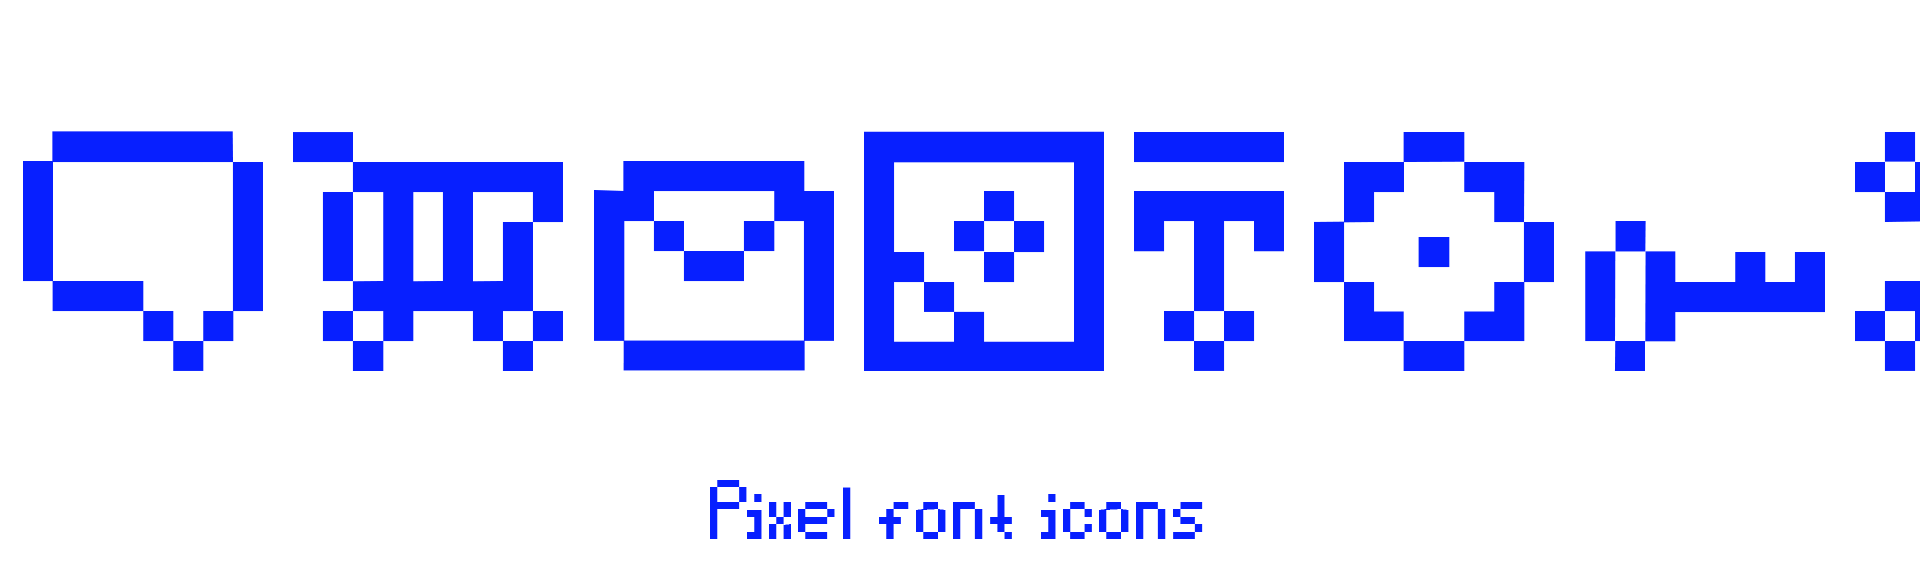 SK Eliz Free Pixel Font - bitmap-fonts